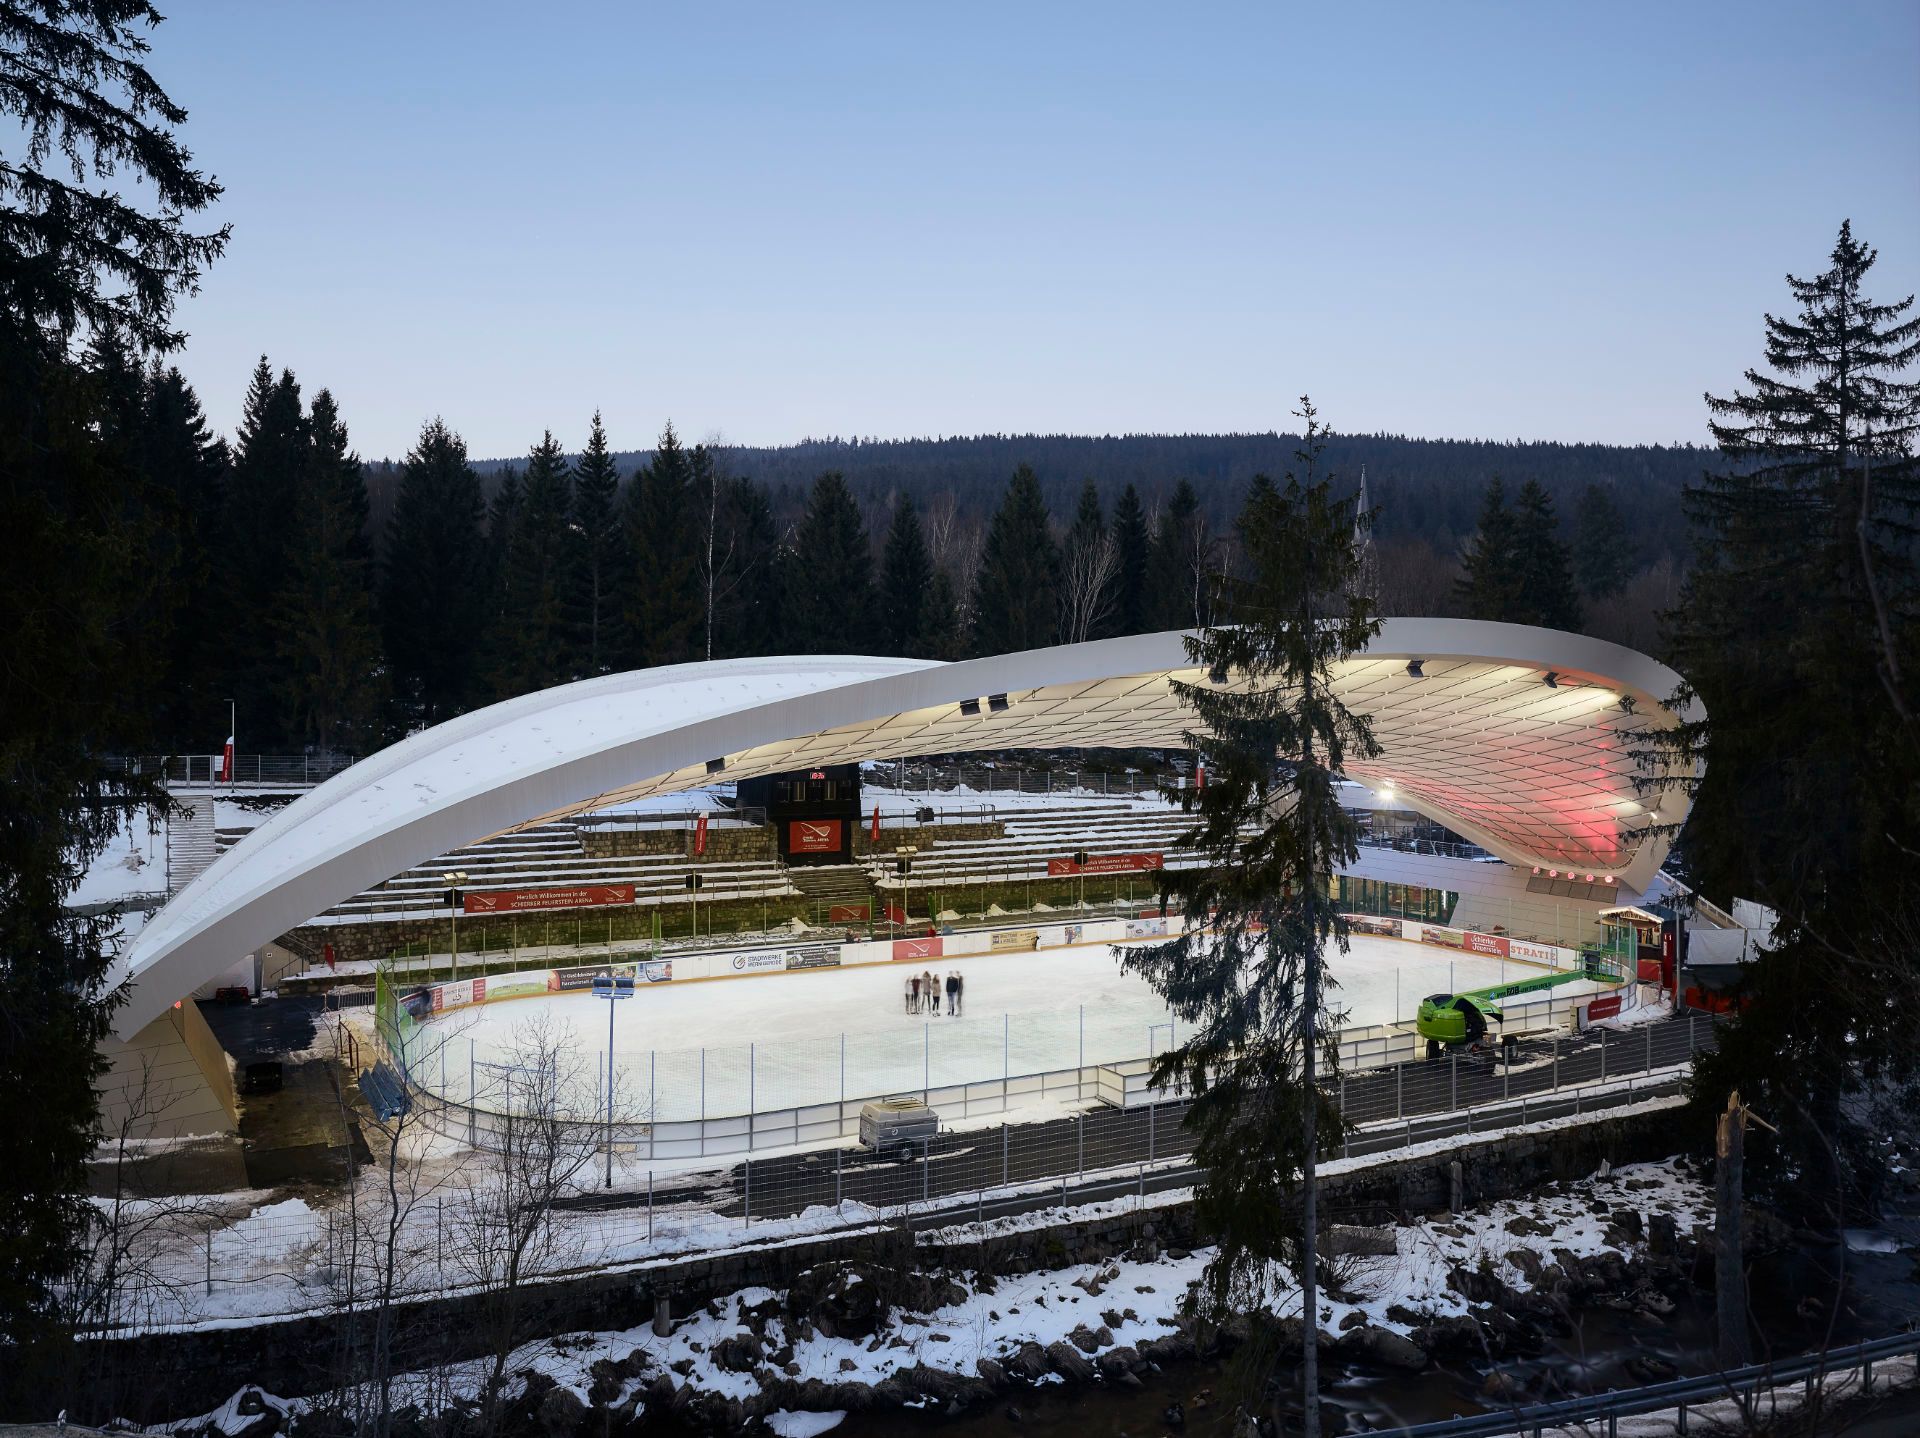 Ice Stadium Schierker Feuerstein Arena